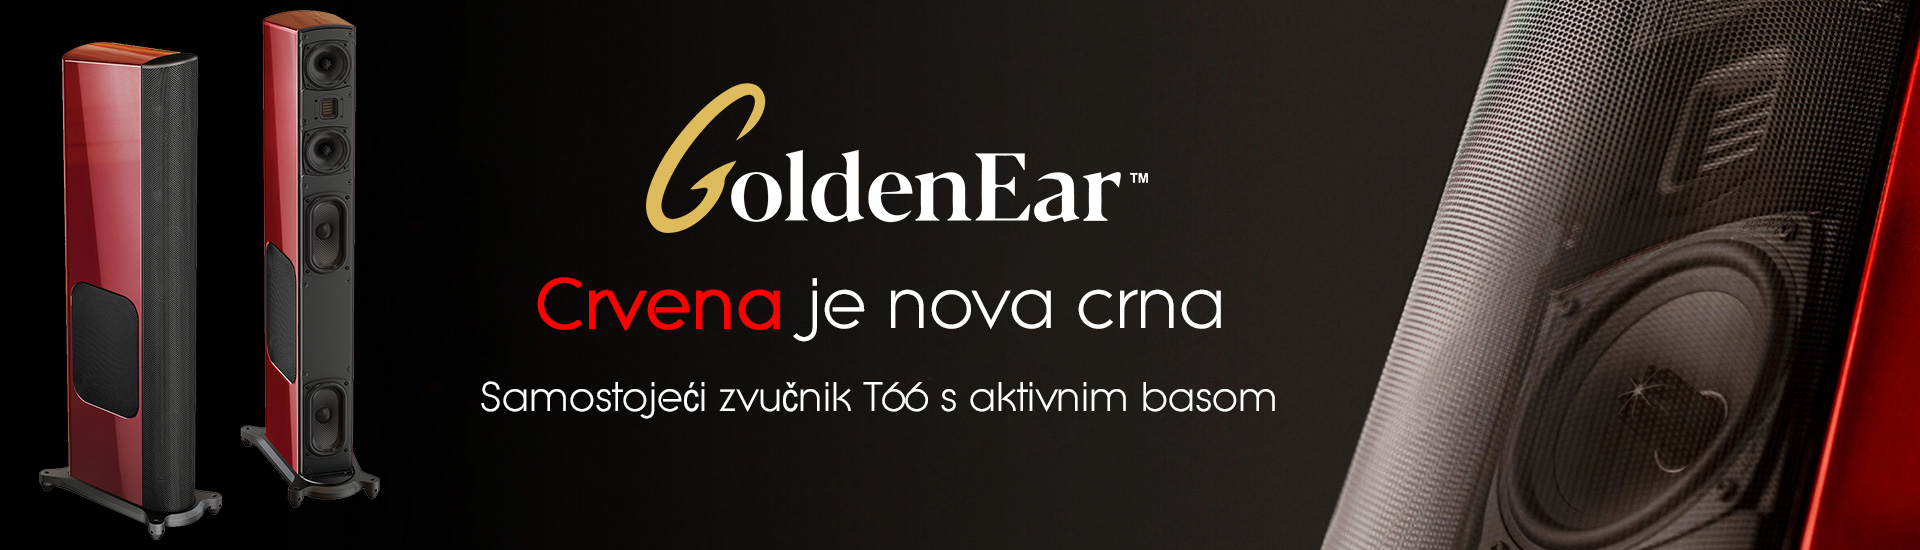 Golden Ear T66